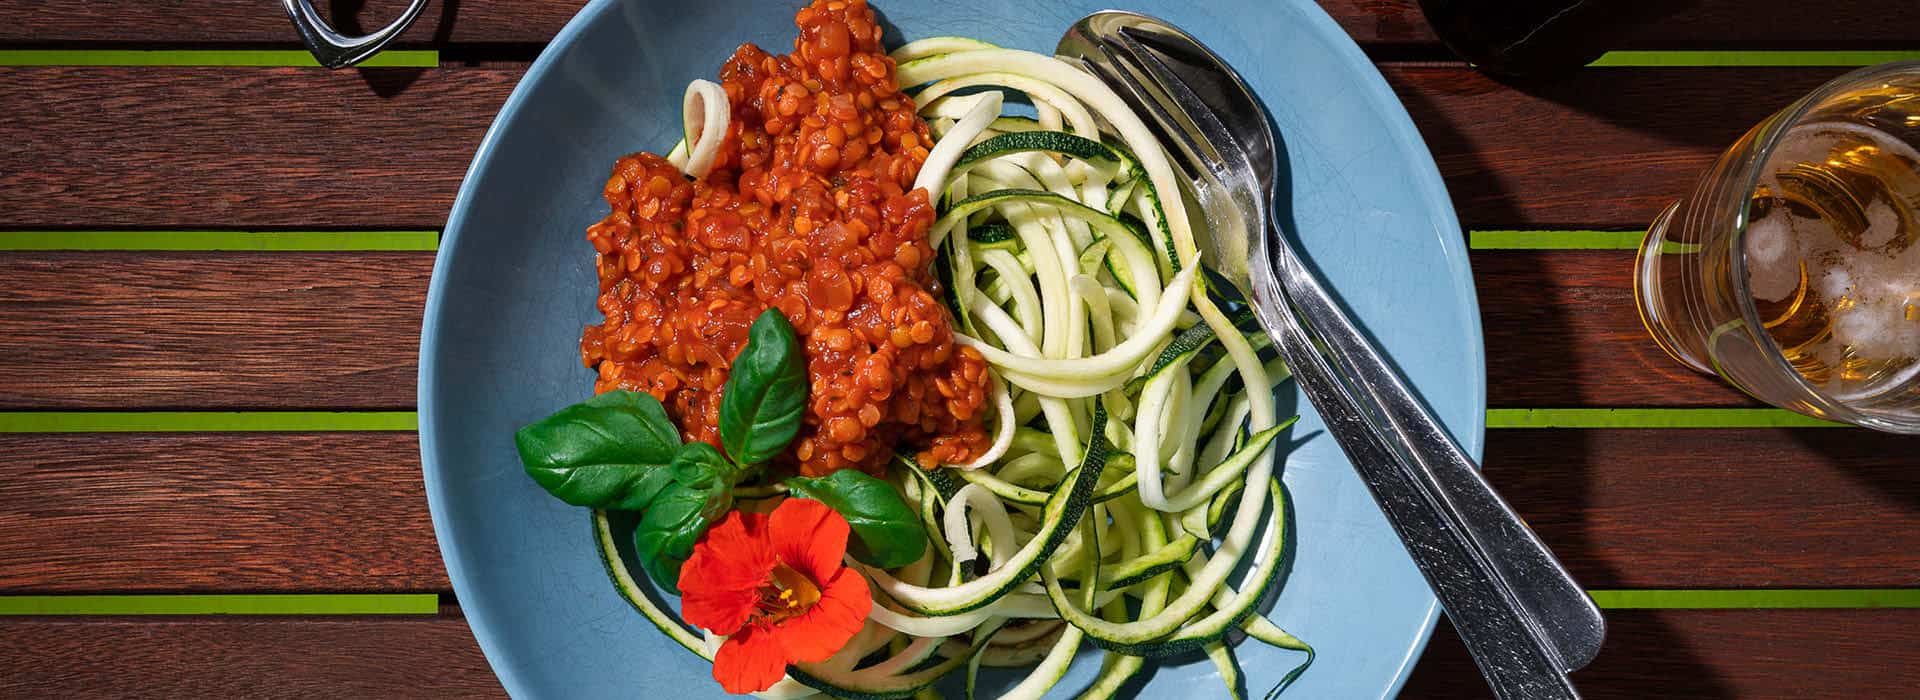 Zucchini-Spaghetti trifft Linsen-Bolognese: Ein Fest für Grüne Gaumen